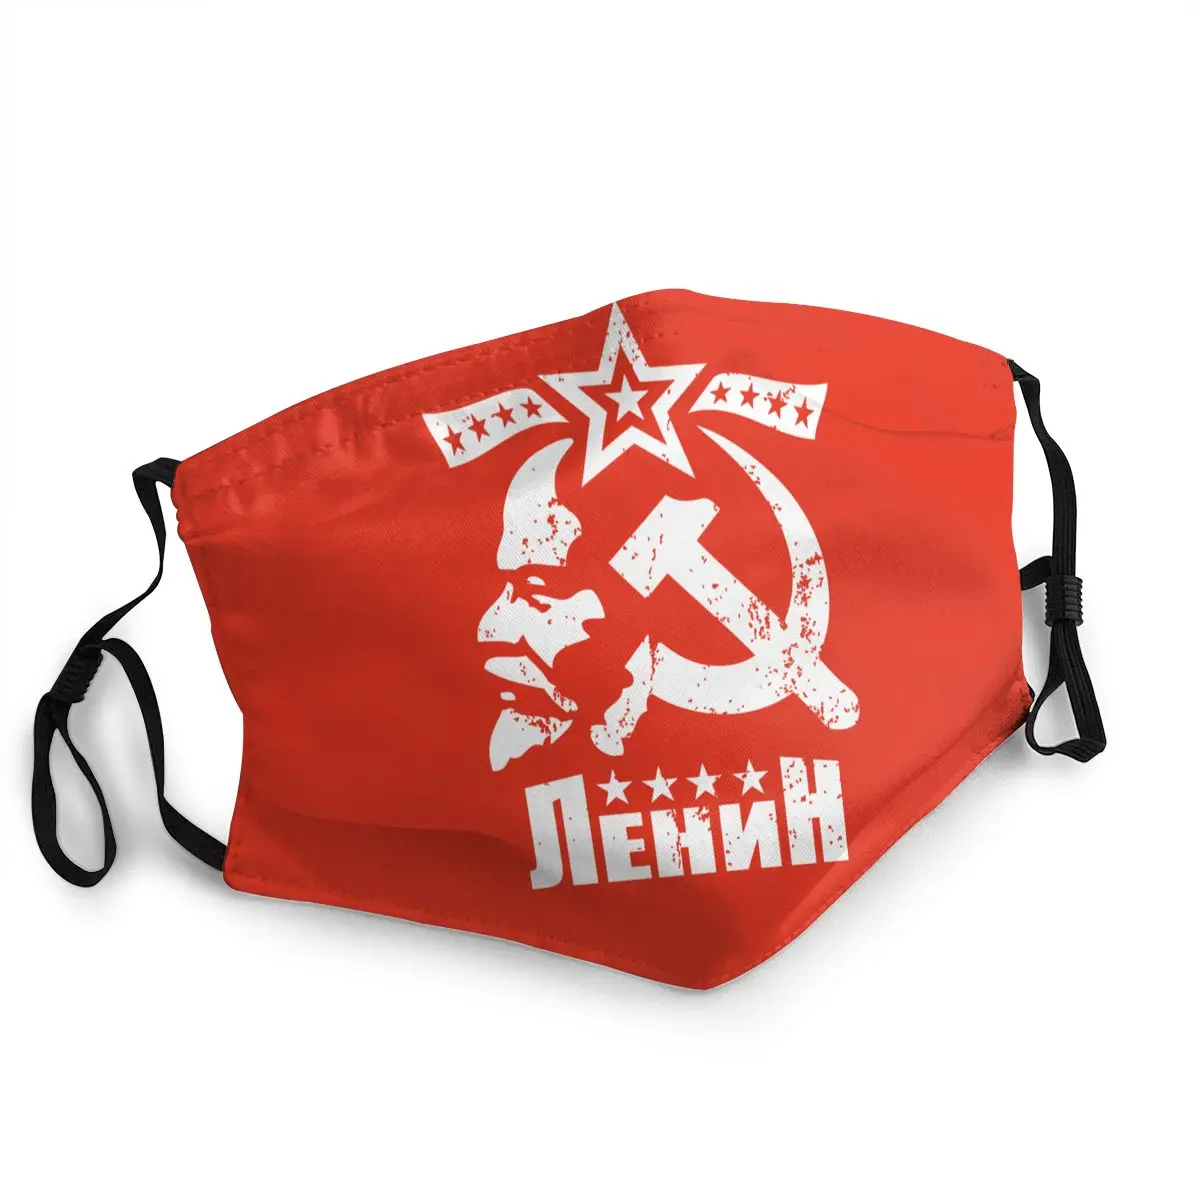 

Многоразовая маска для лица «Владимир илиич Ленин», маска против смога СССР, коммунизма, социализма, защитная маска, респиратор